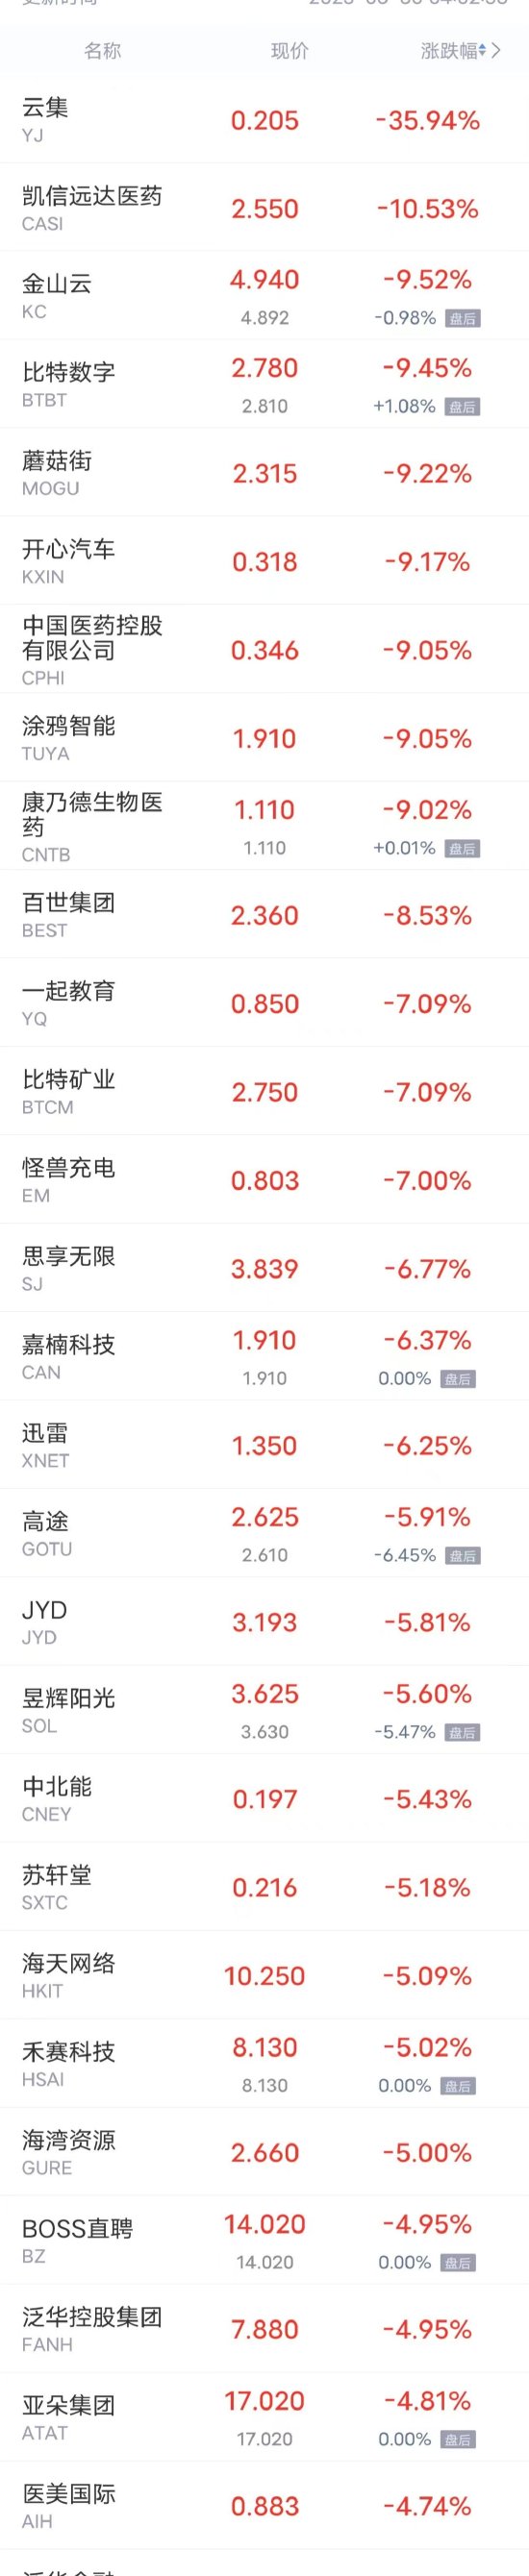 周一热门中概股涨跌不一 京东、理想汽车涨超2%，哔哩哔哩跌超2%